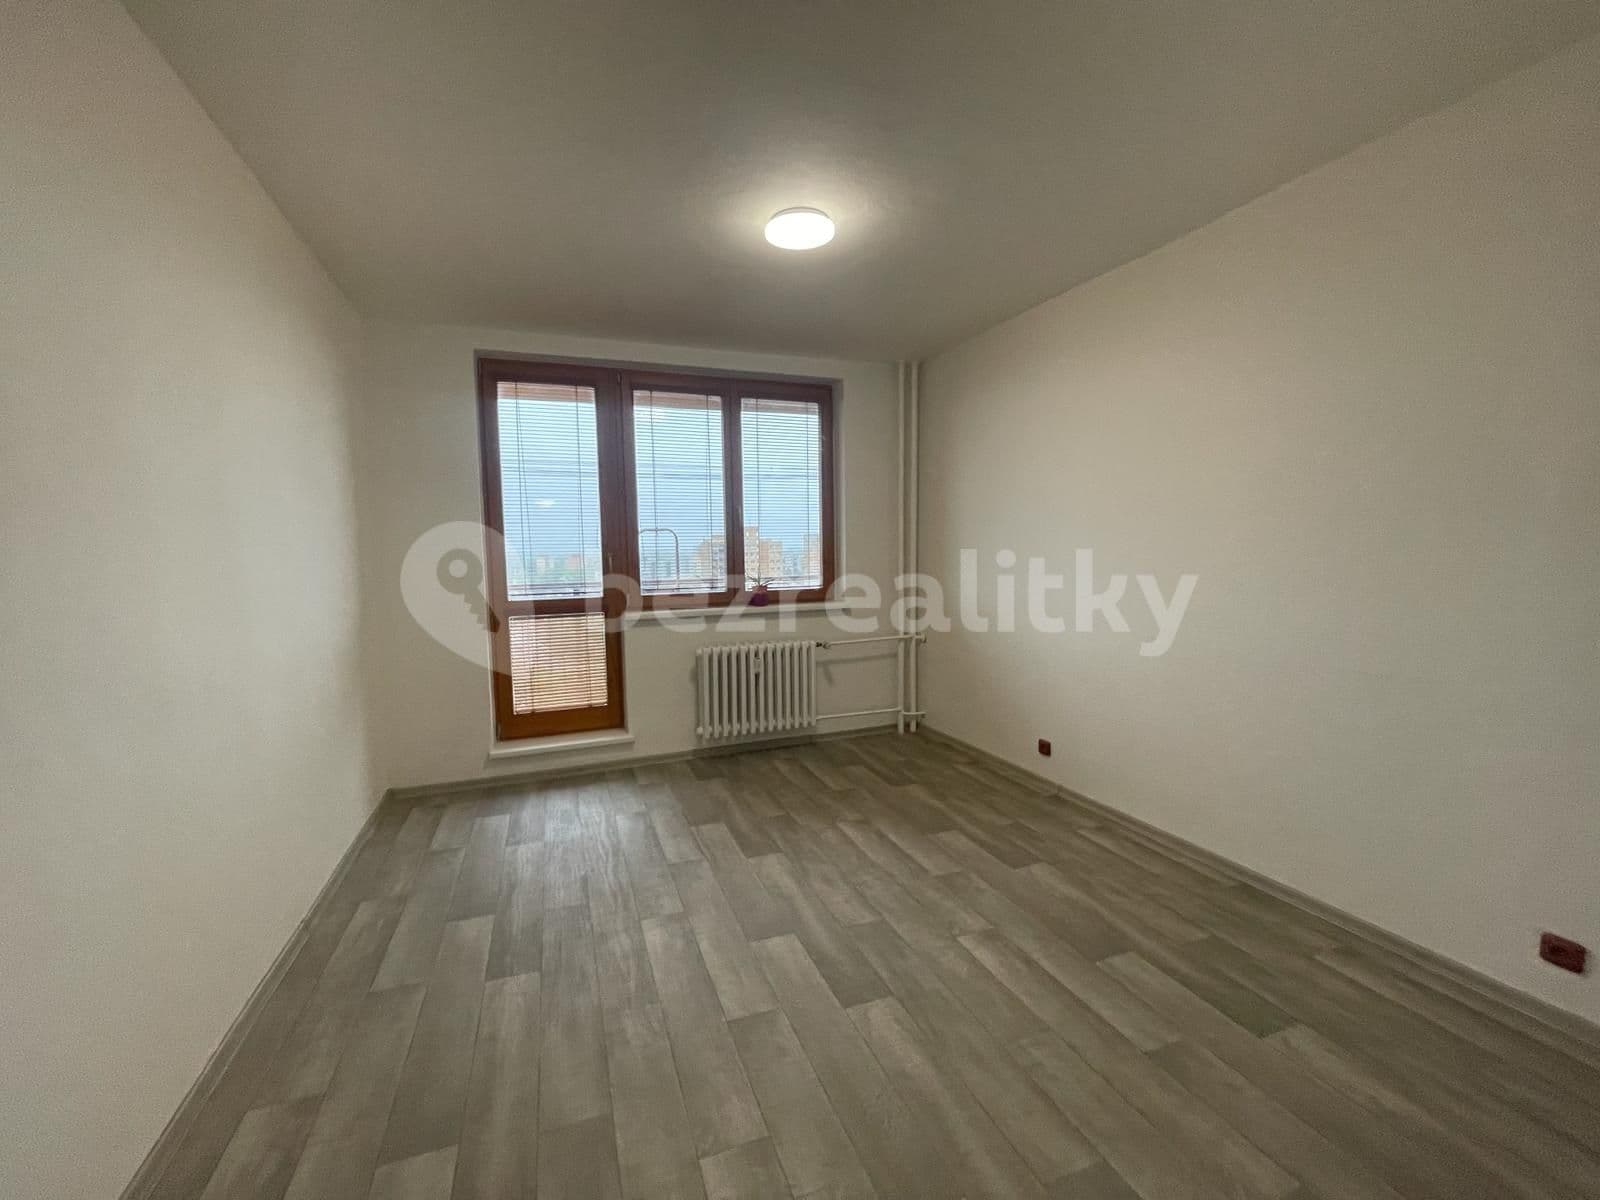 1 bedroom with open-plan kitchen flat to rent, 51 m², Horymírova, Ostrava, Moravskoslezský Region